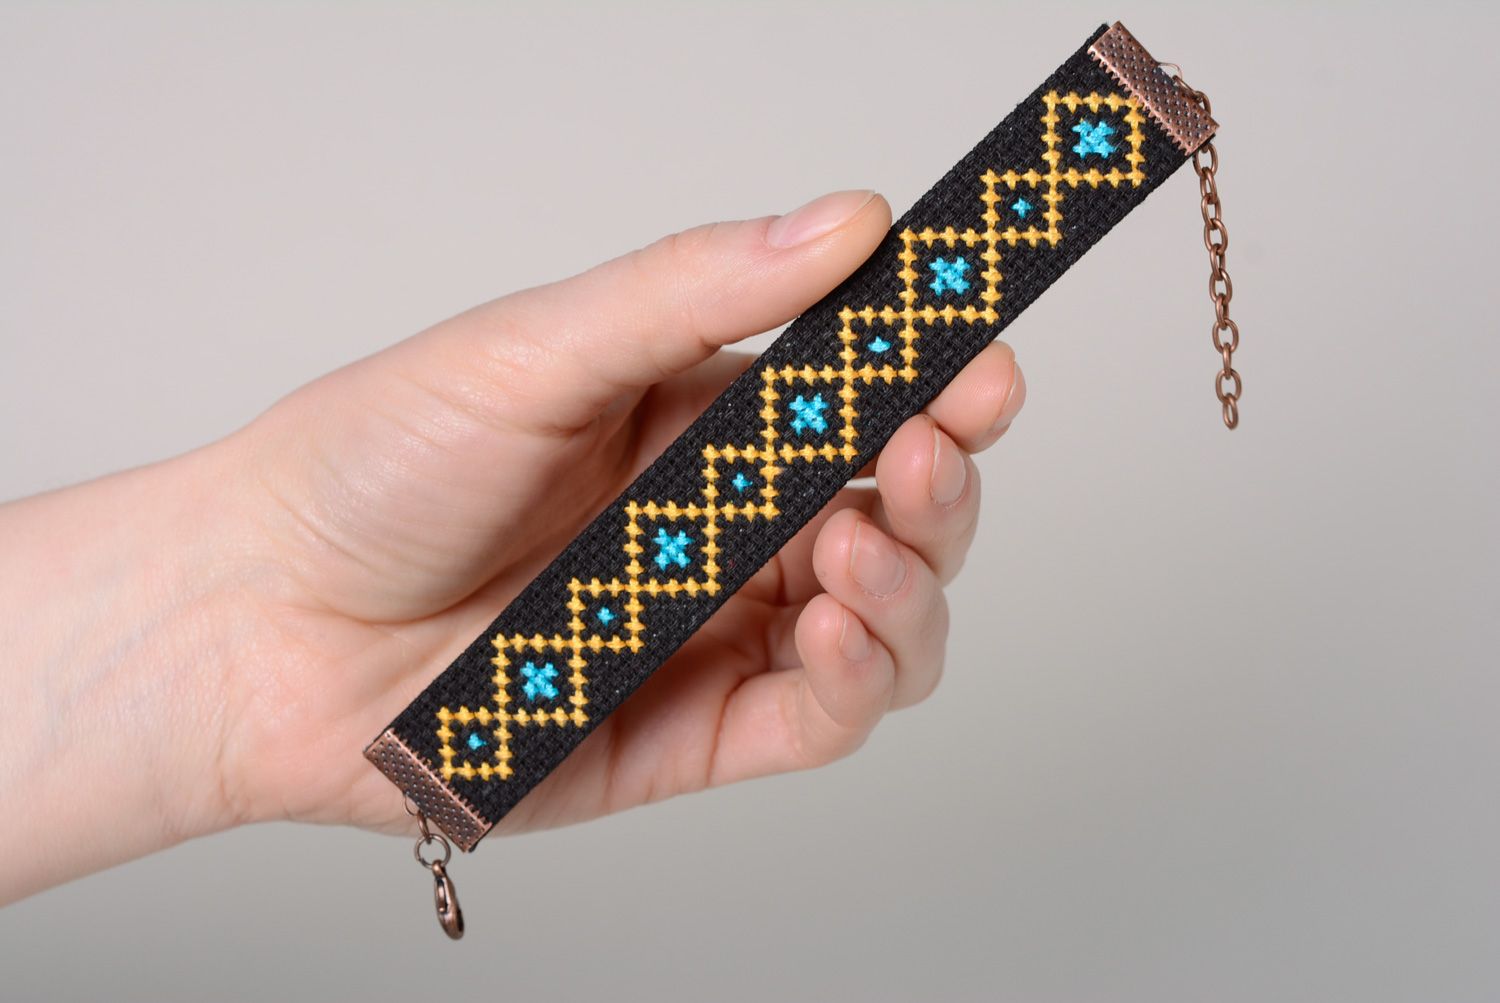 Textil Armband mit Kreuzstichstickerei foto 4